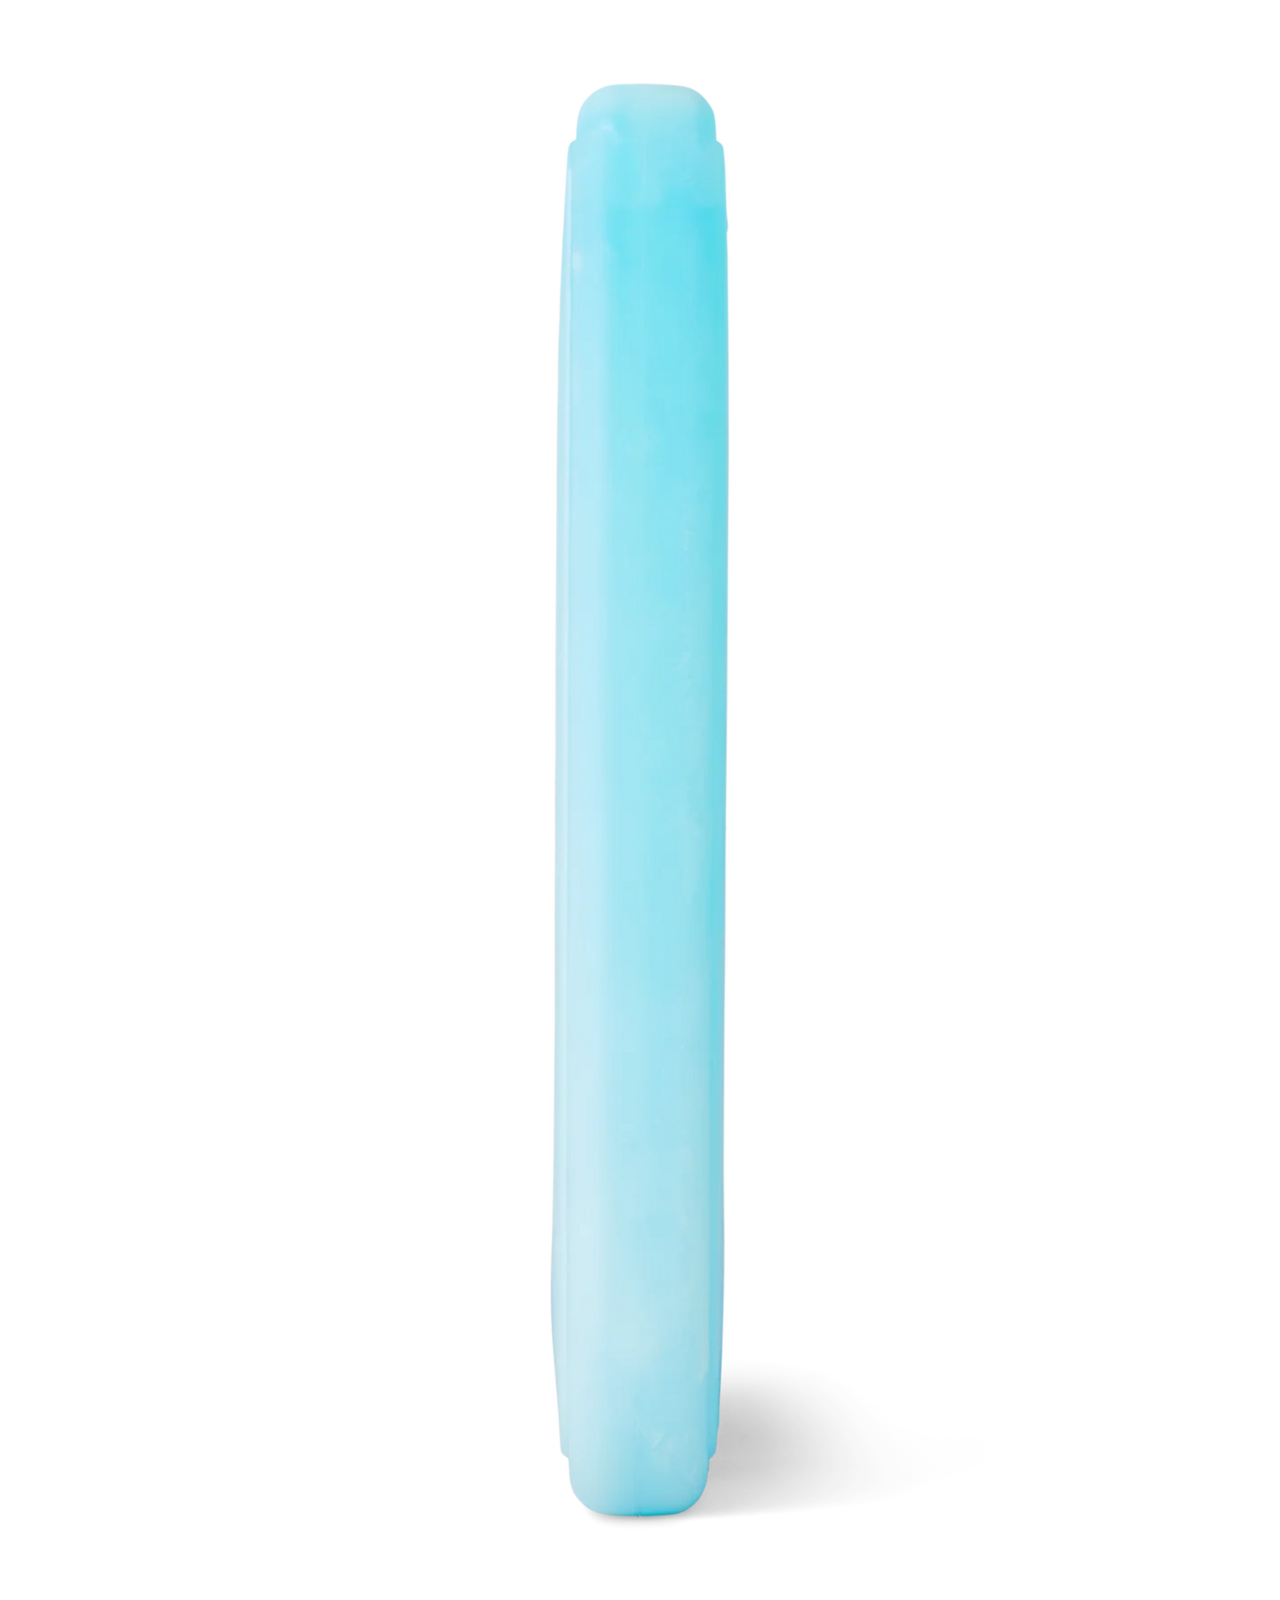 Kylklamp Thin Ice - Large